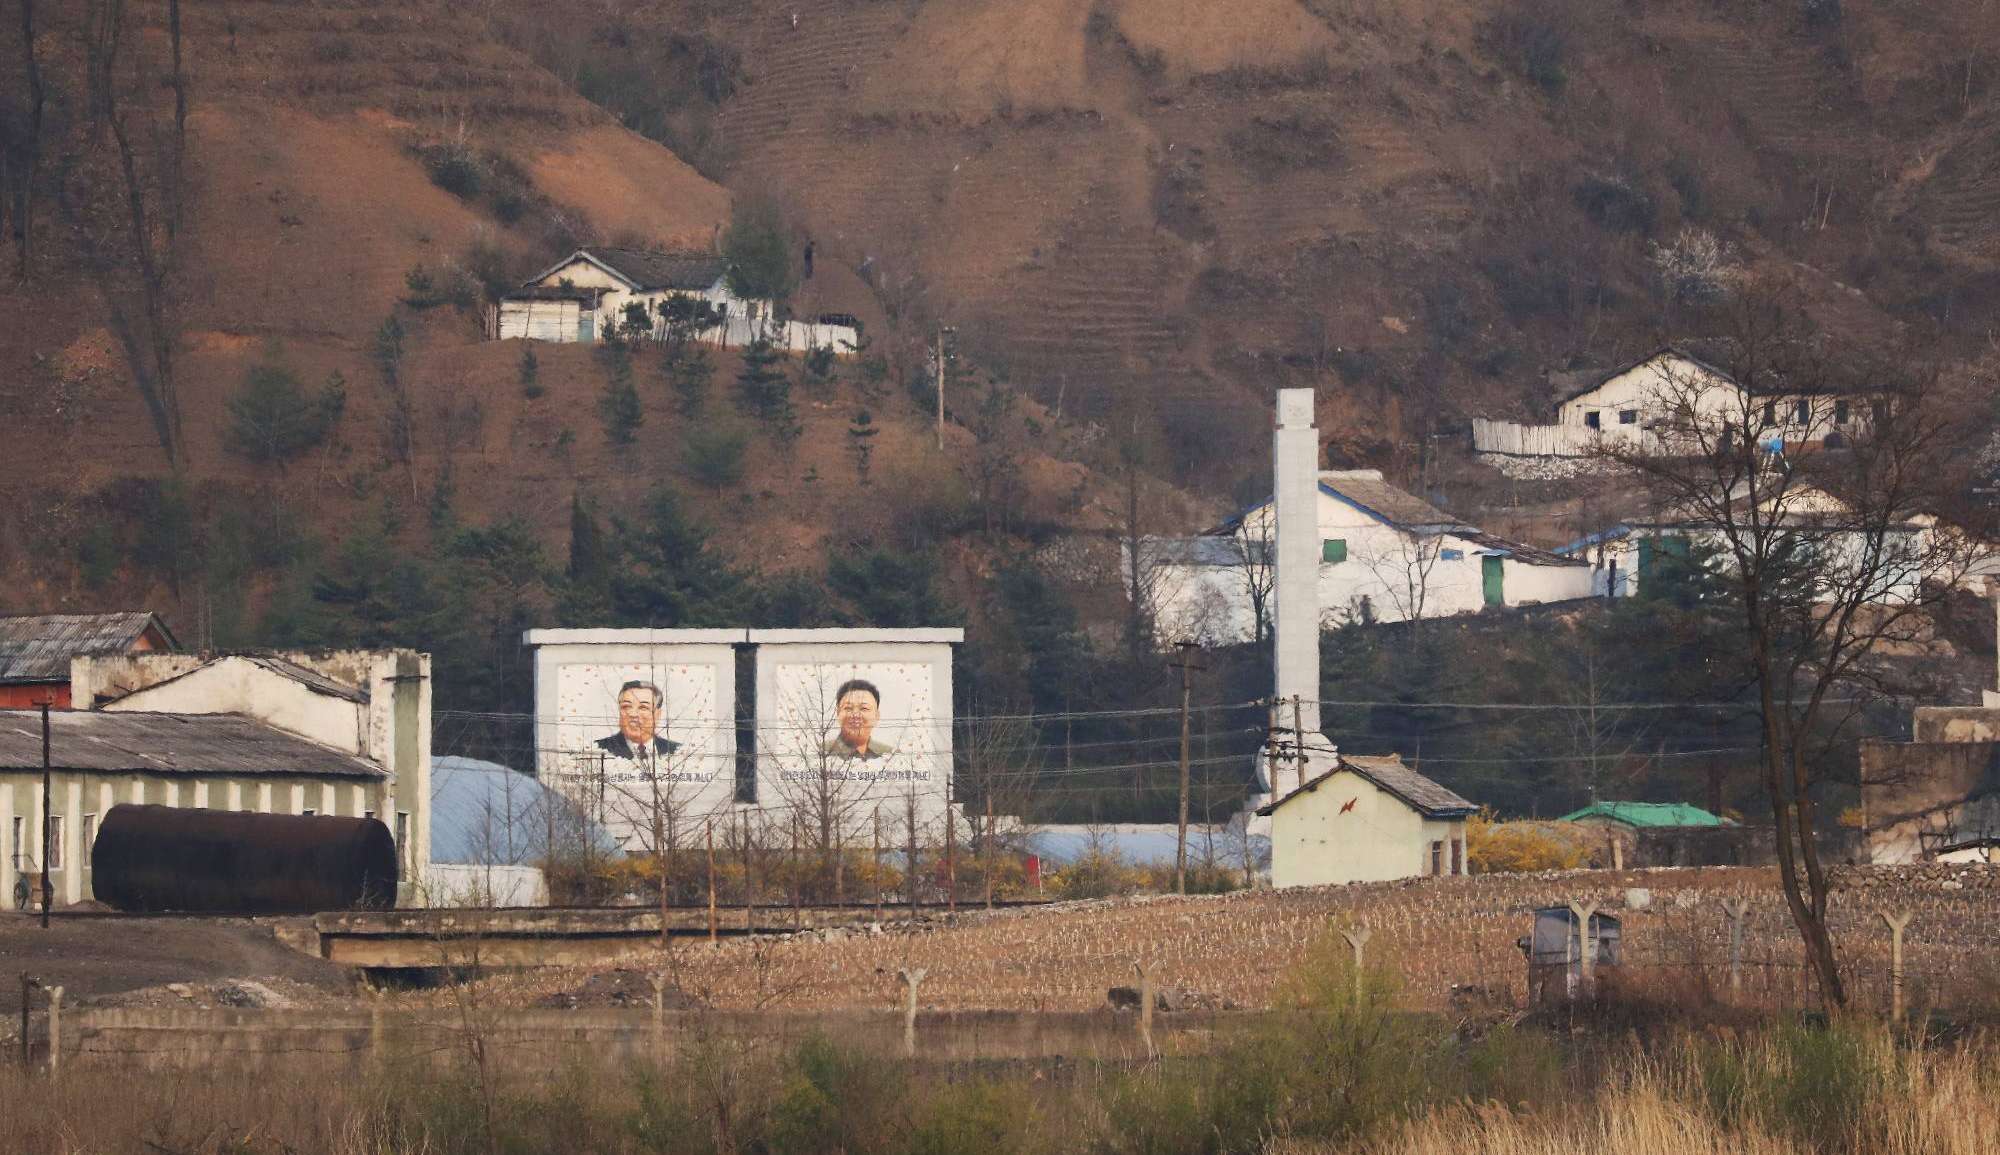 Coreia do Norte construiu muro nas suas fronteiras durante pandemia. 